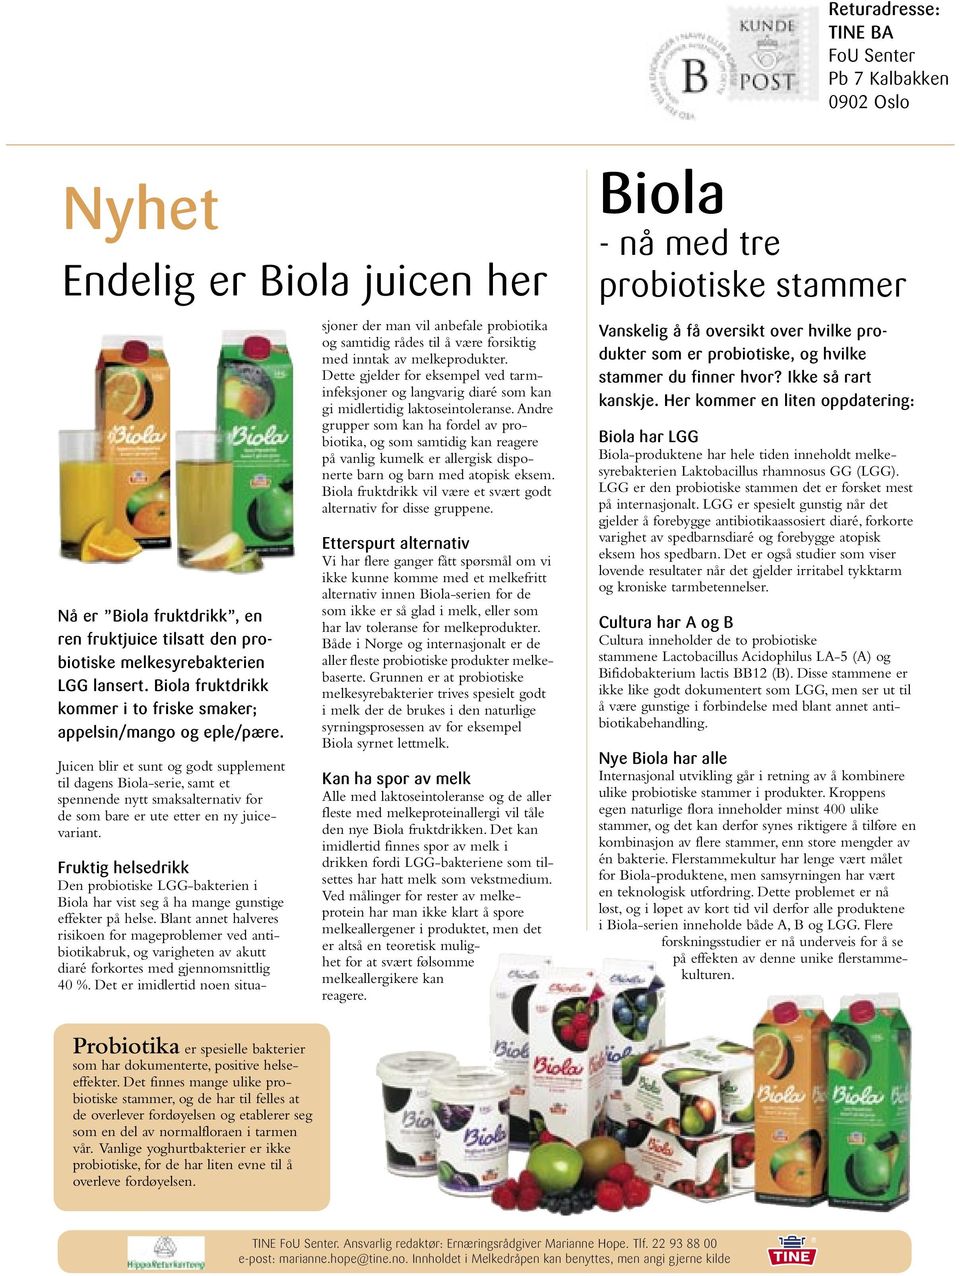 Juicen blir et sunt og godt supplement til dagens Biola-serie, samt et spennende nytt smaksalternativ for de som bare er ute etter en ny juicevariant.